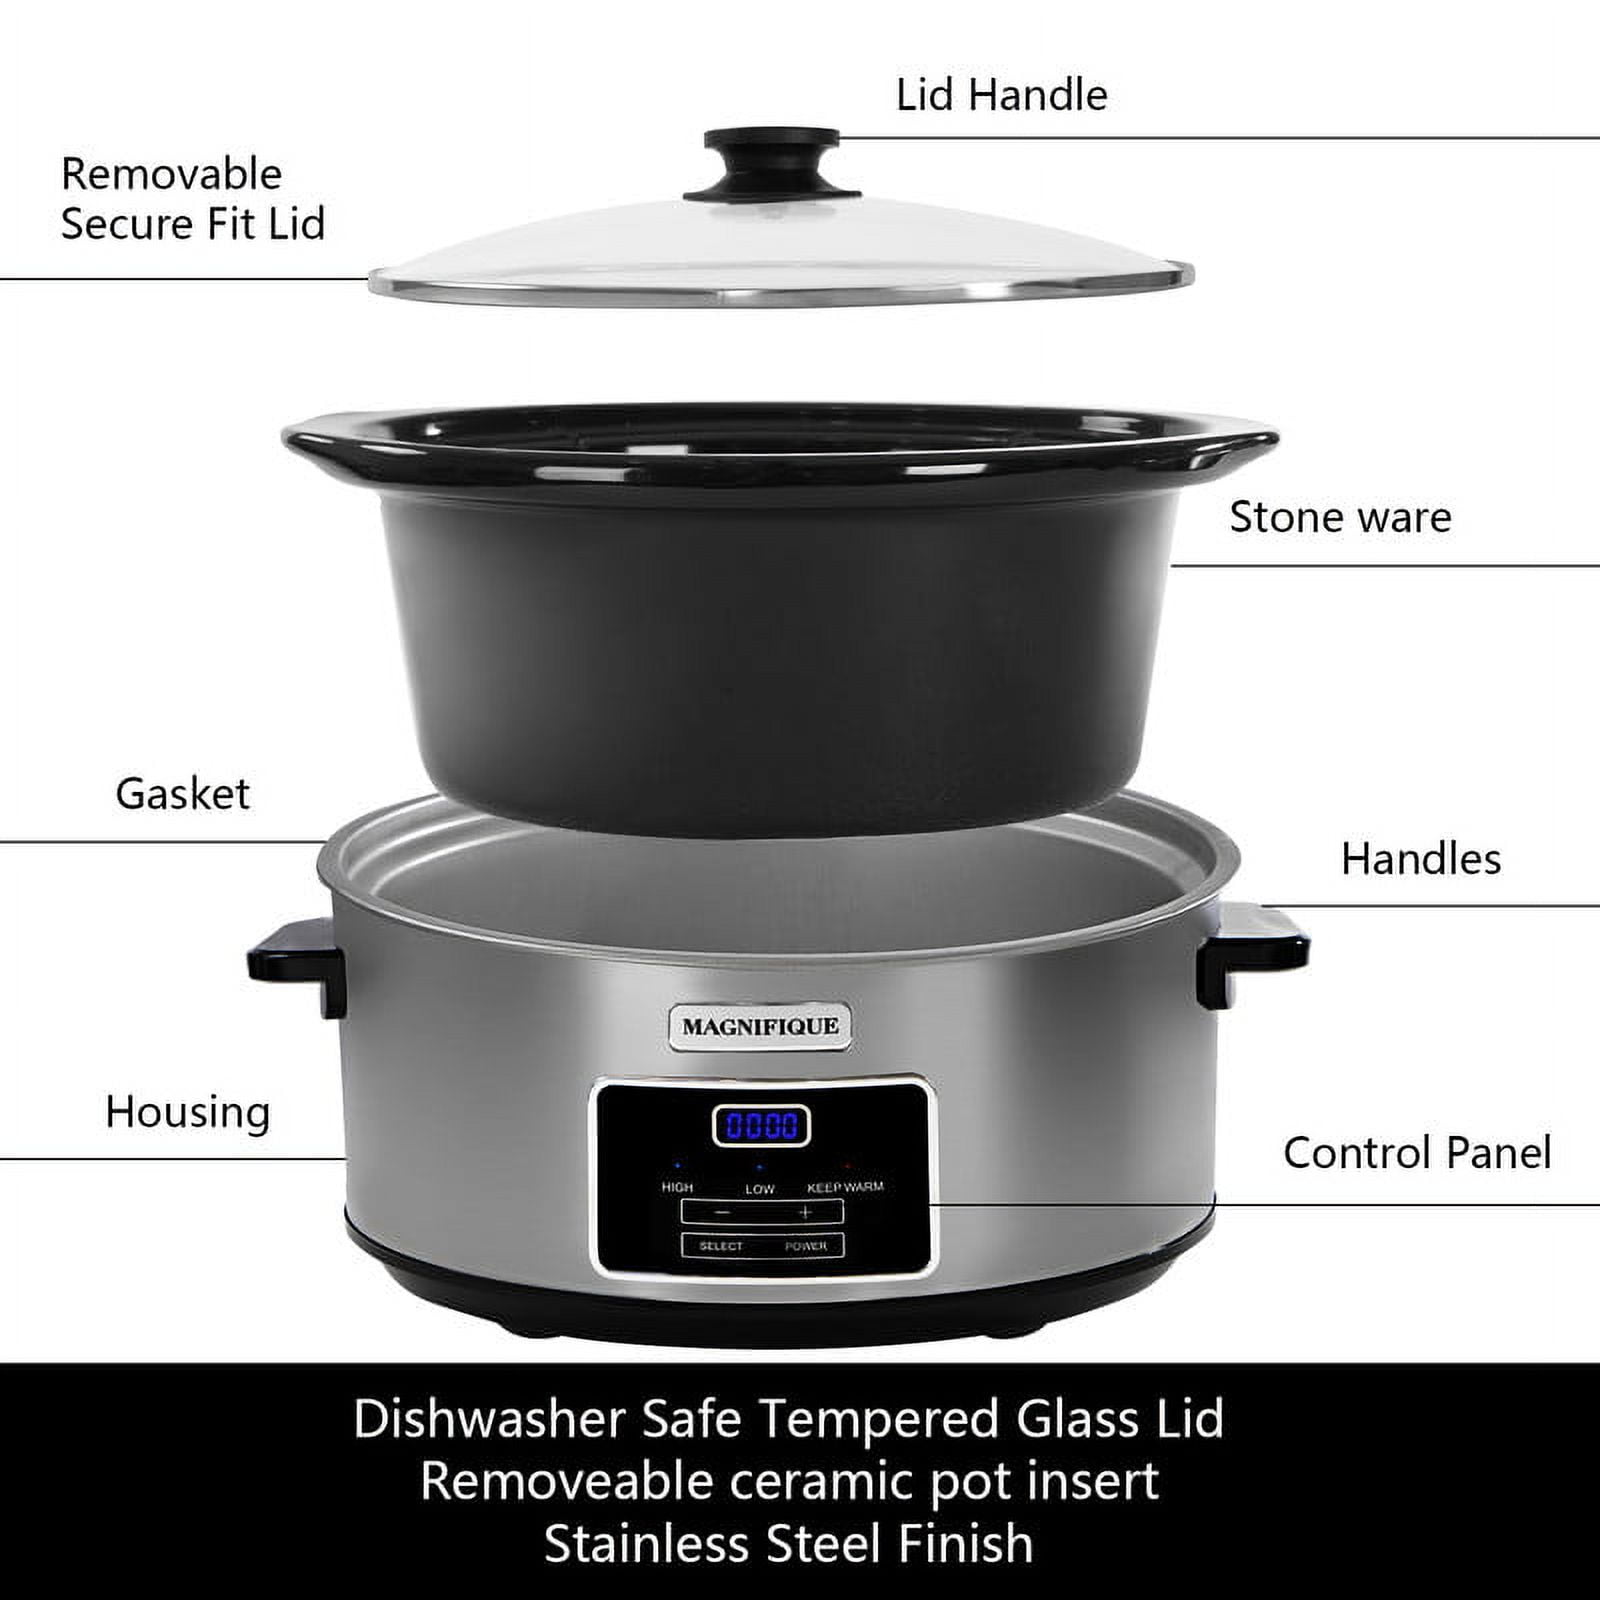 Magnifique 8-Quart Digital Programmable Slow Cooker with Timer, Black, Size: 8qt